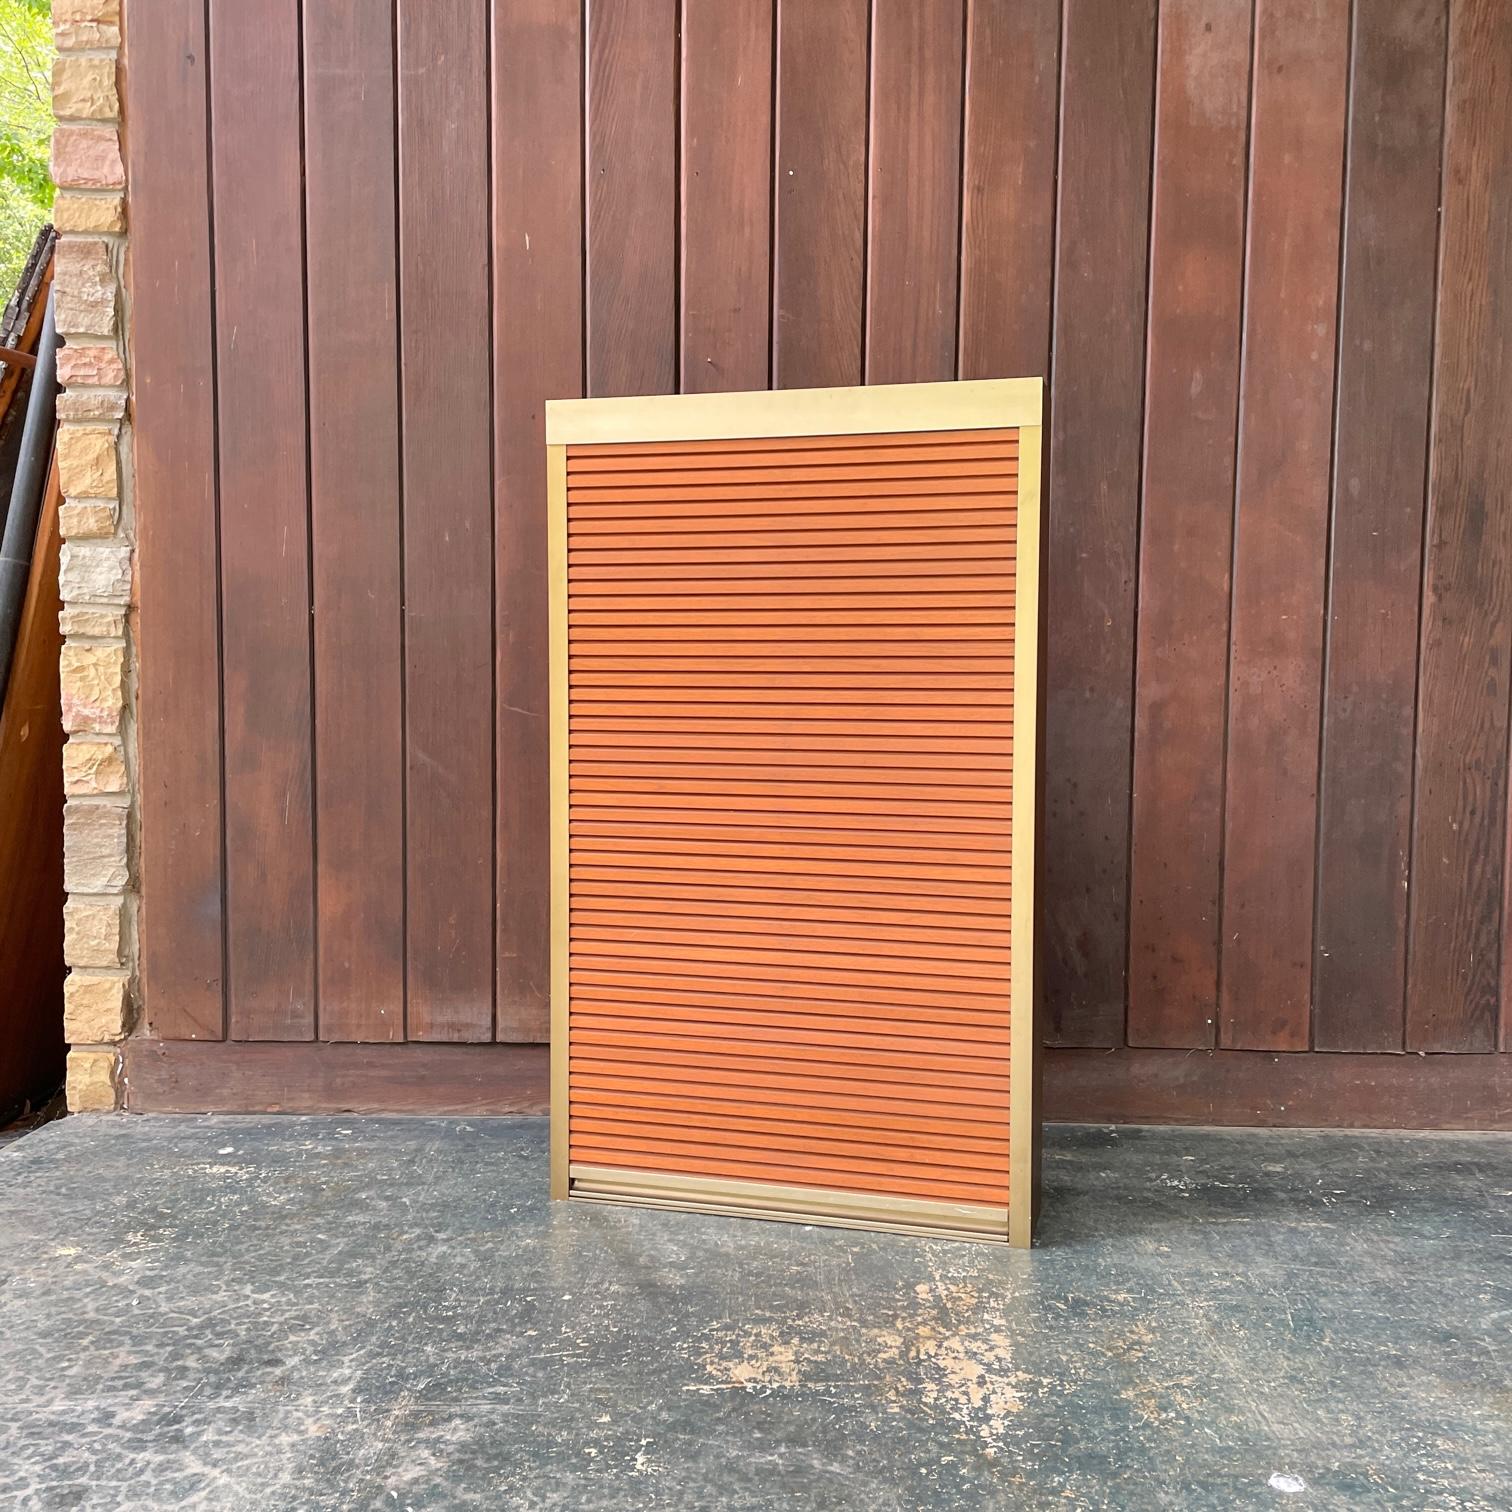 Super coole und kompakte Box aus eloxiertem, bronziertem Aluminium mit vertikal einziehbarer Tür.  Sauber und minimalistisch.  Entnommen von der Wand eines Anwesens in Washington DC Georgetown.  Die Tür funktioniert gut und wird mit der